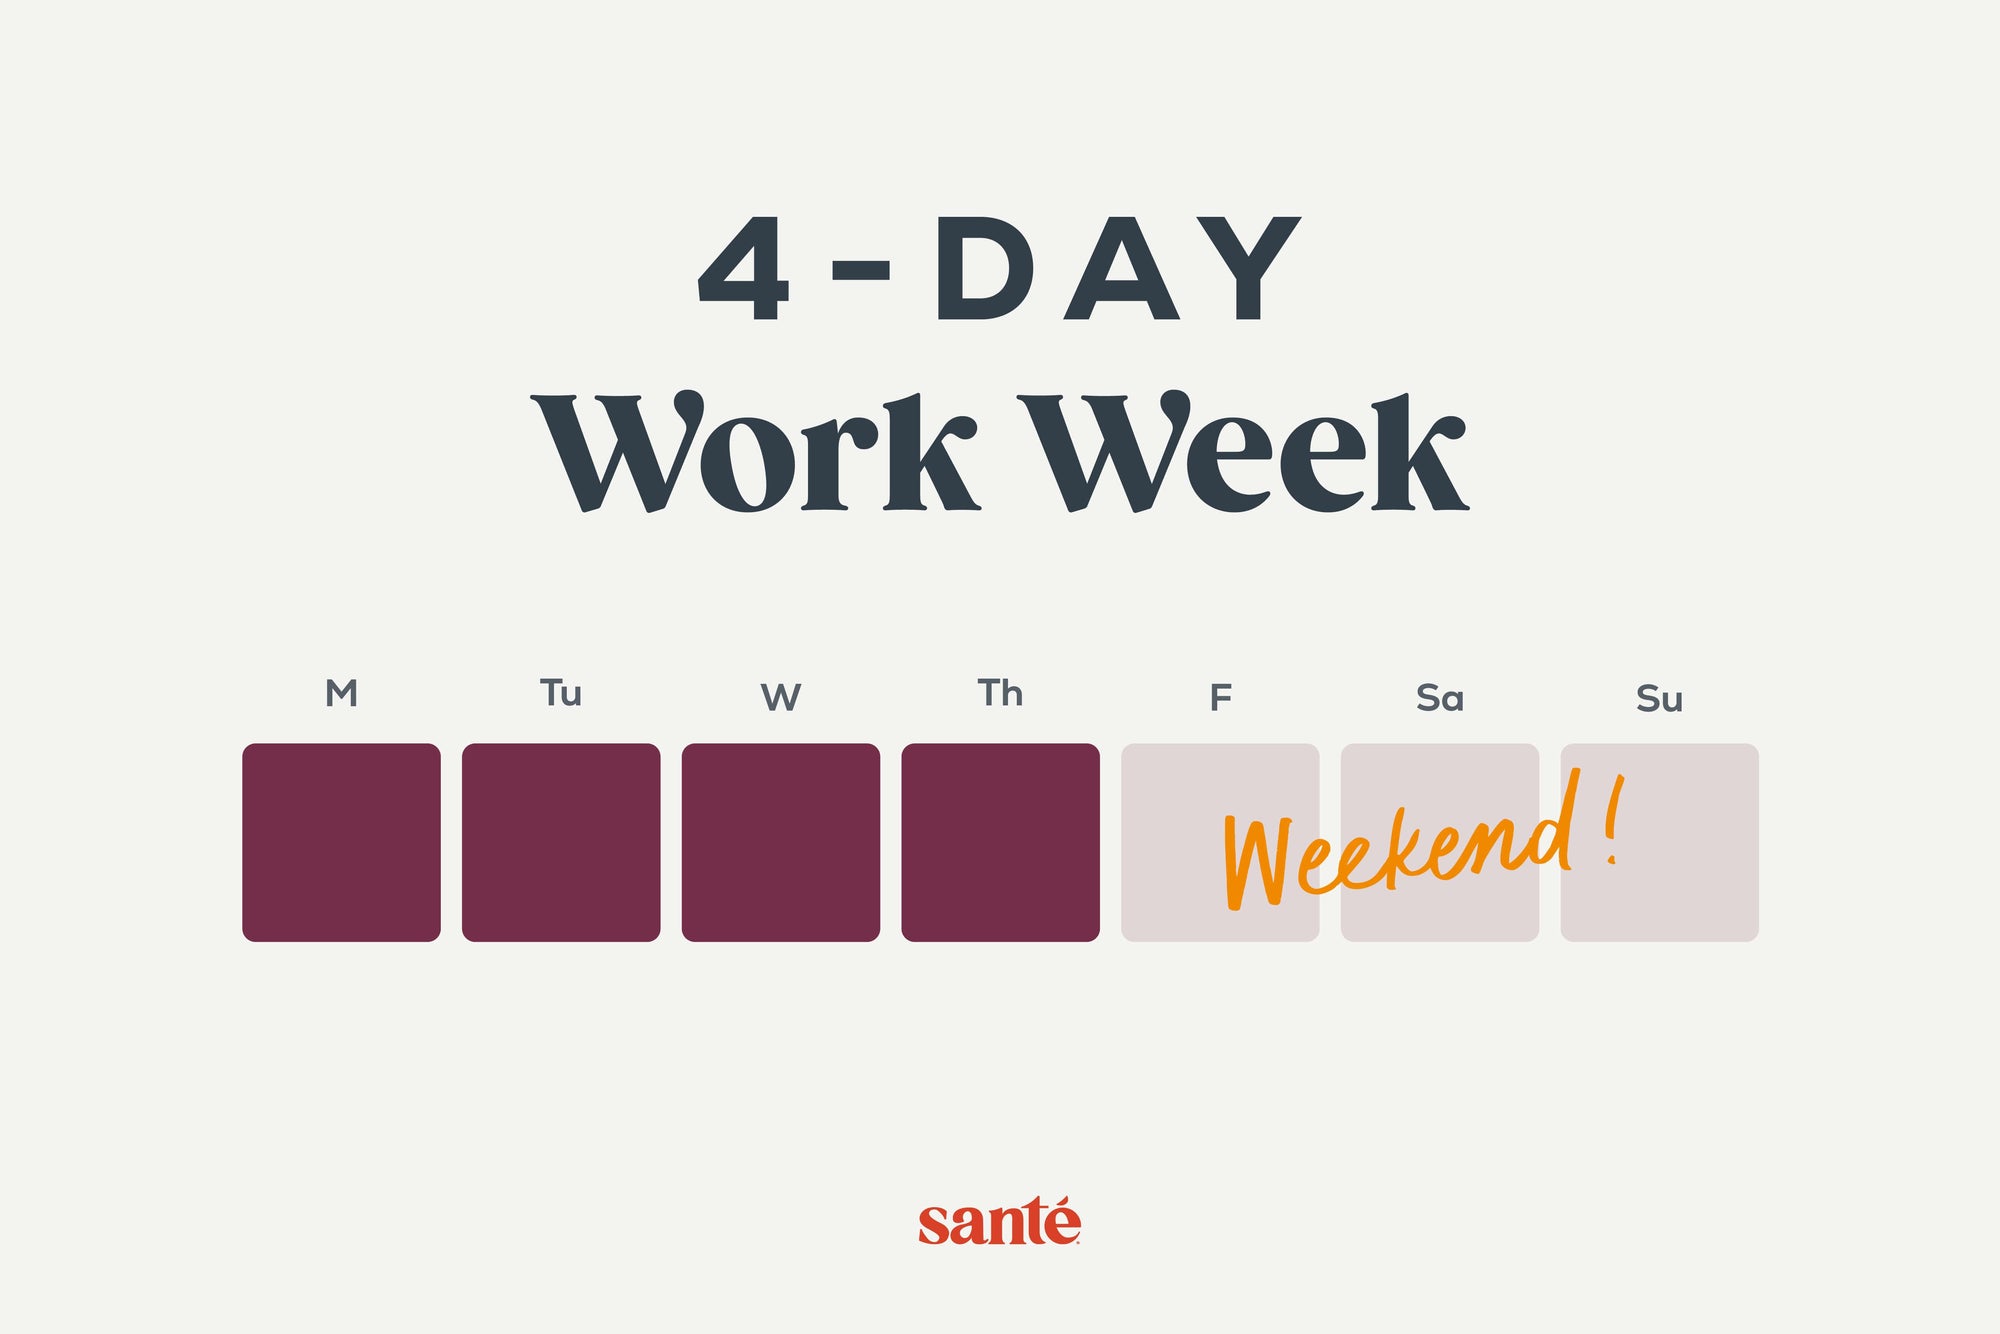 Santé Nuts observes a 4-day work week